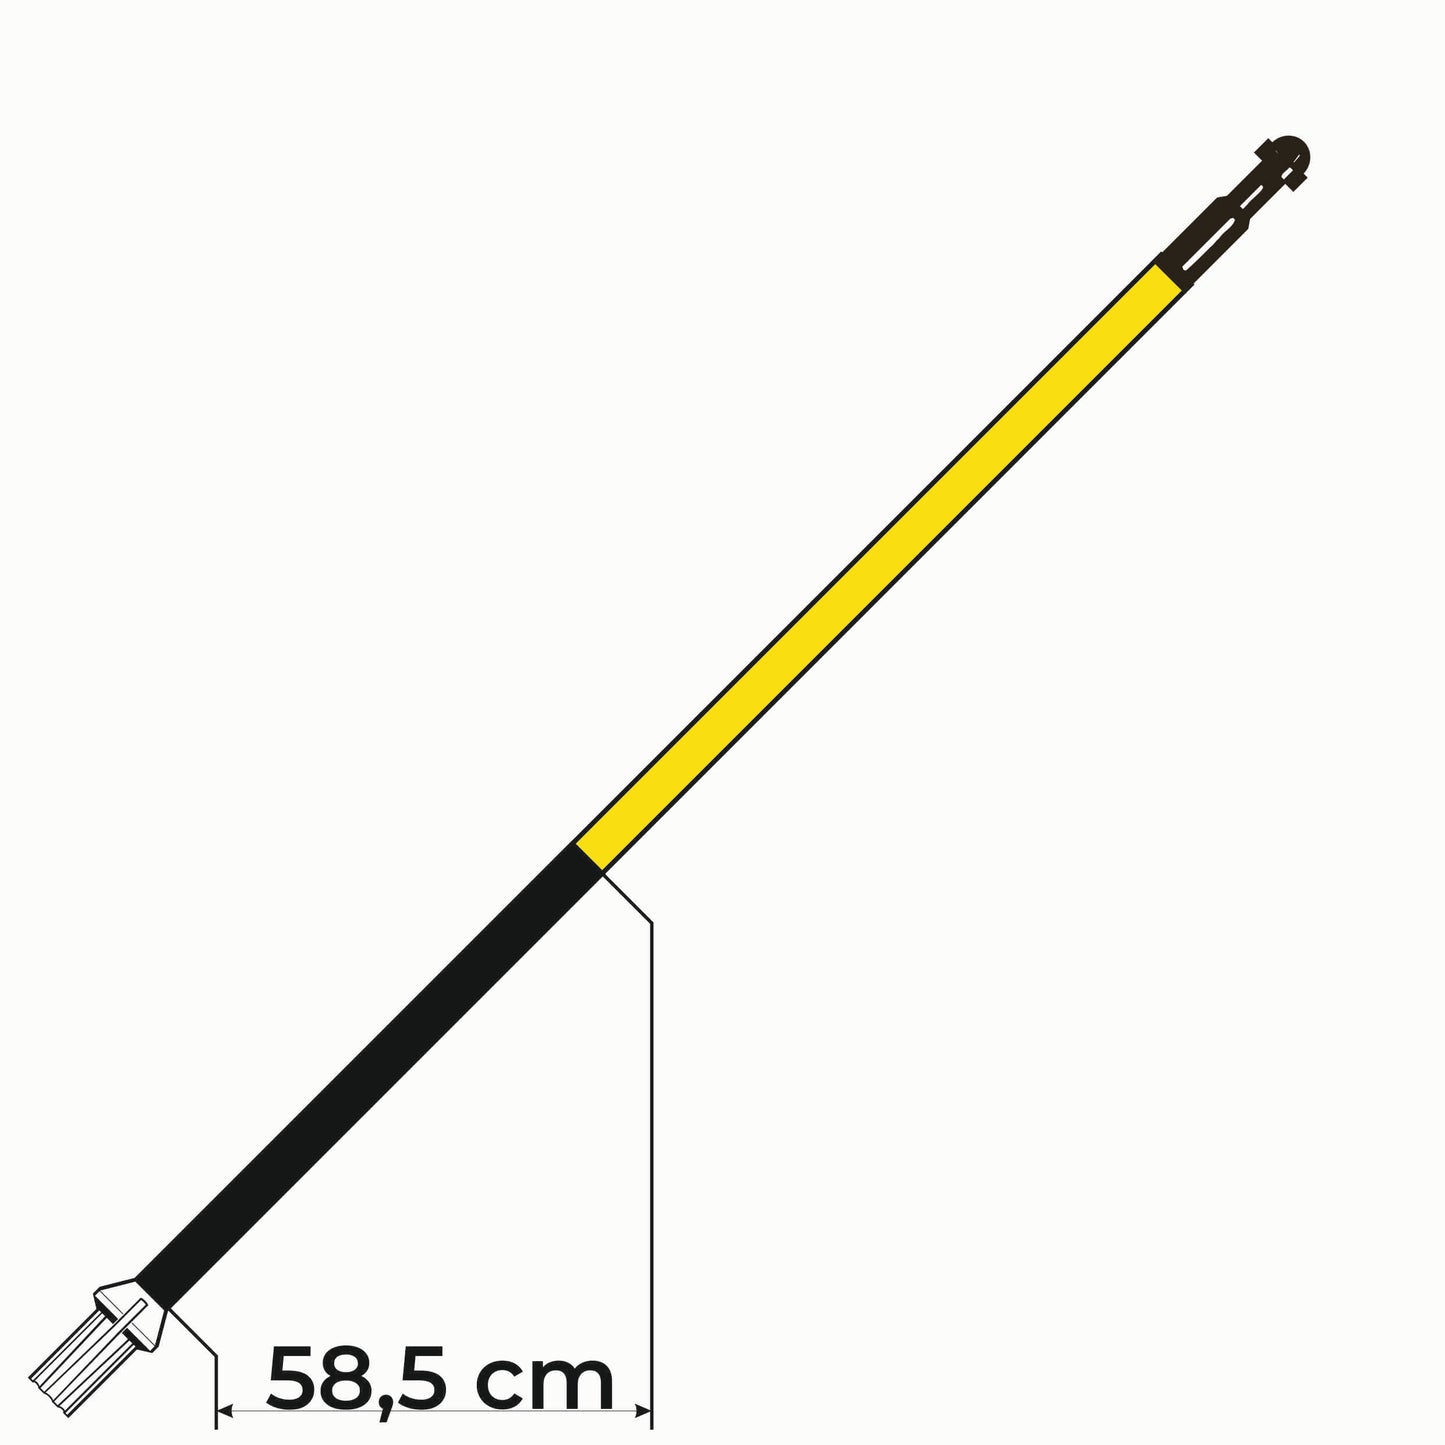 Golfflaggstang 5 fot i gul med 1 svart fält